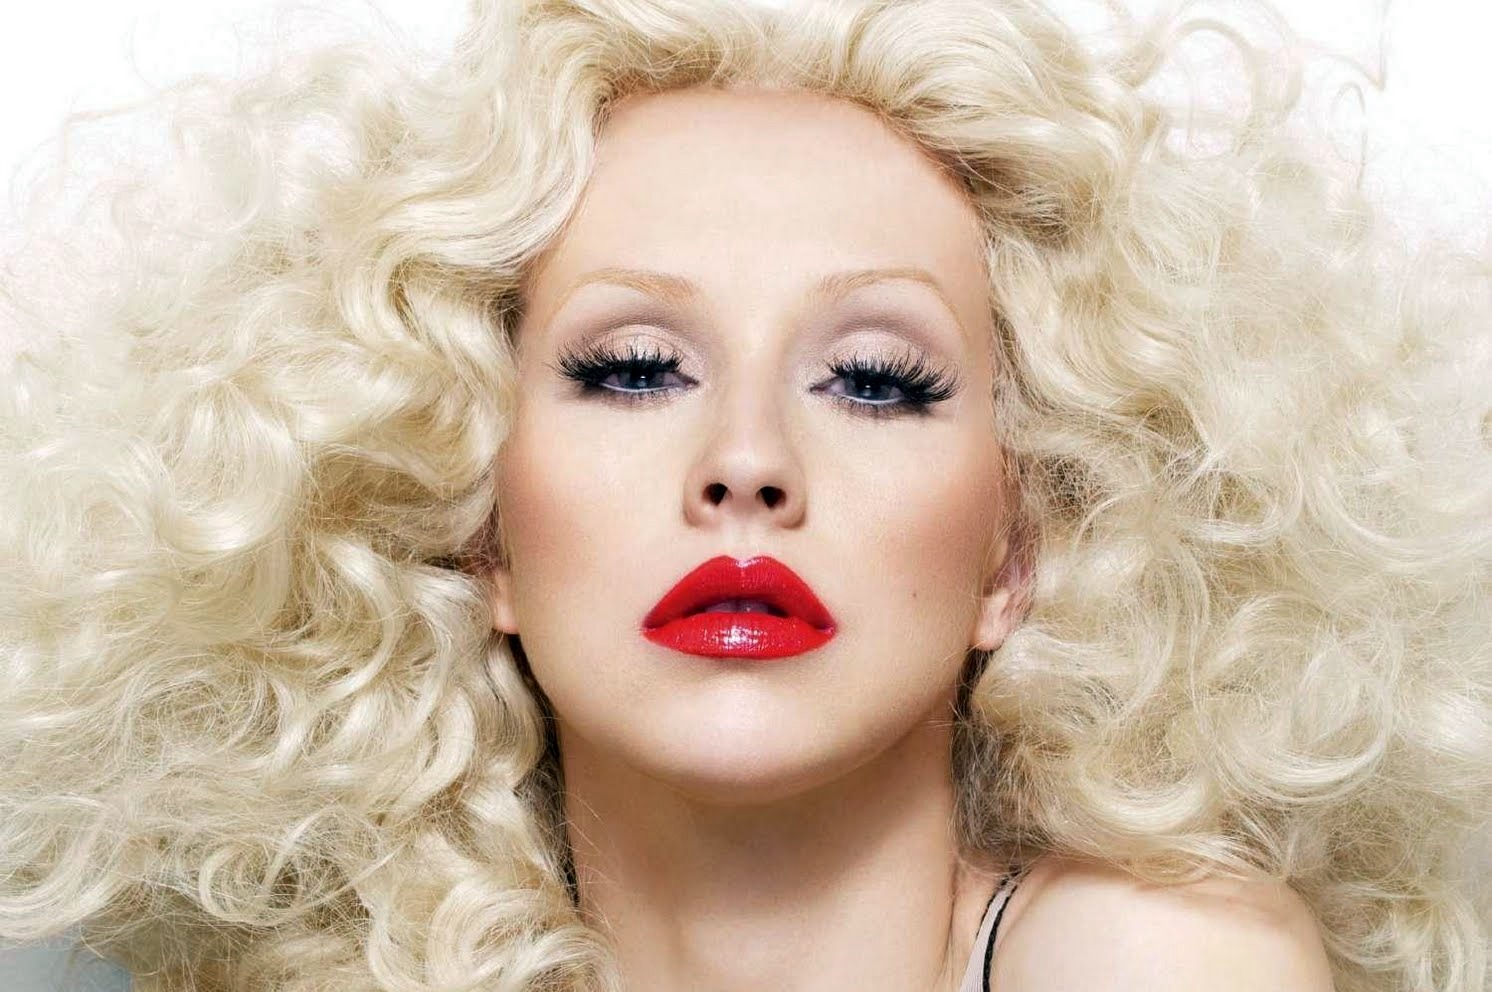 Descarga gratuita de fondo de pantalla para móvil de Cristina Aguilera, Música.